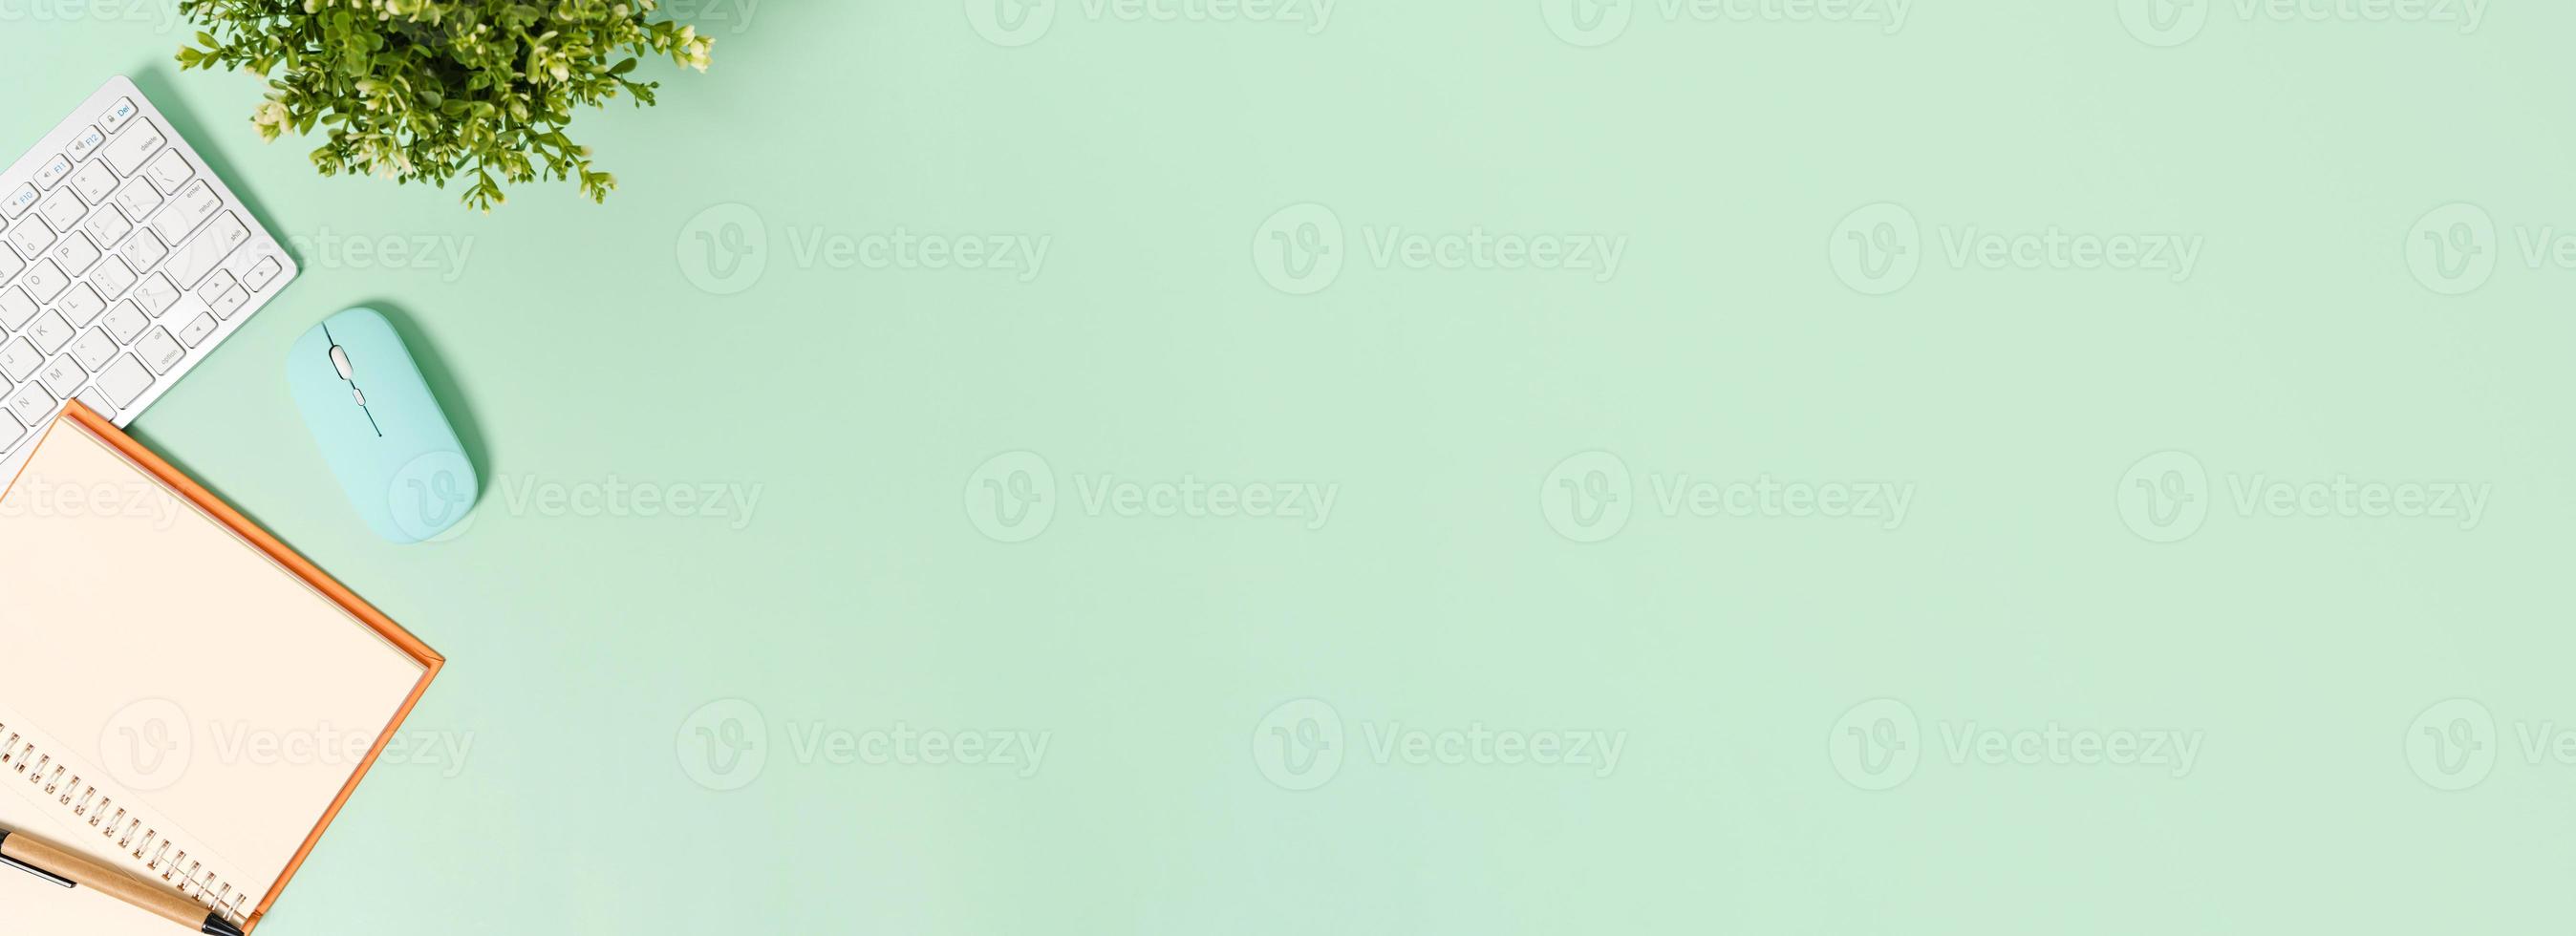 foto plana leiga criativa da mesa do espaço de trabalho. mesa de escritório de vista superior com teclado, mouse e caderno preto de maquete aberta sobre fundo de cor verde pastel. vista superior simulada com fotografia do espaço da cópia.